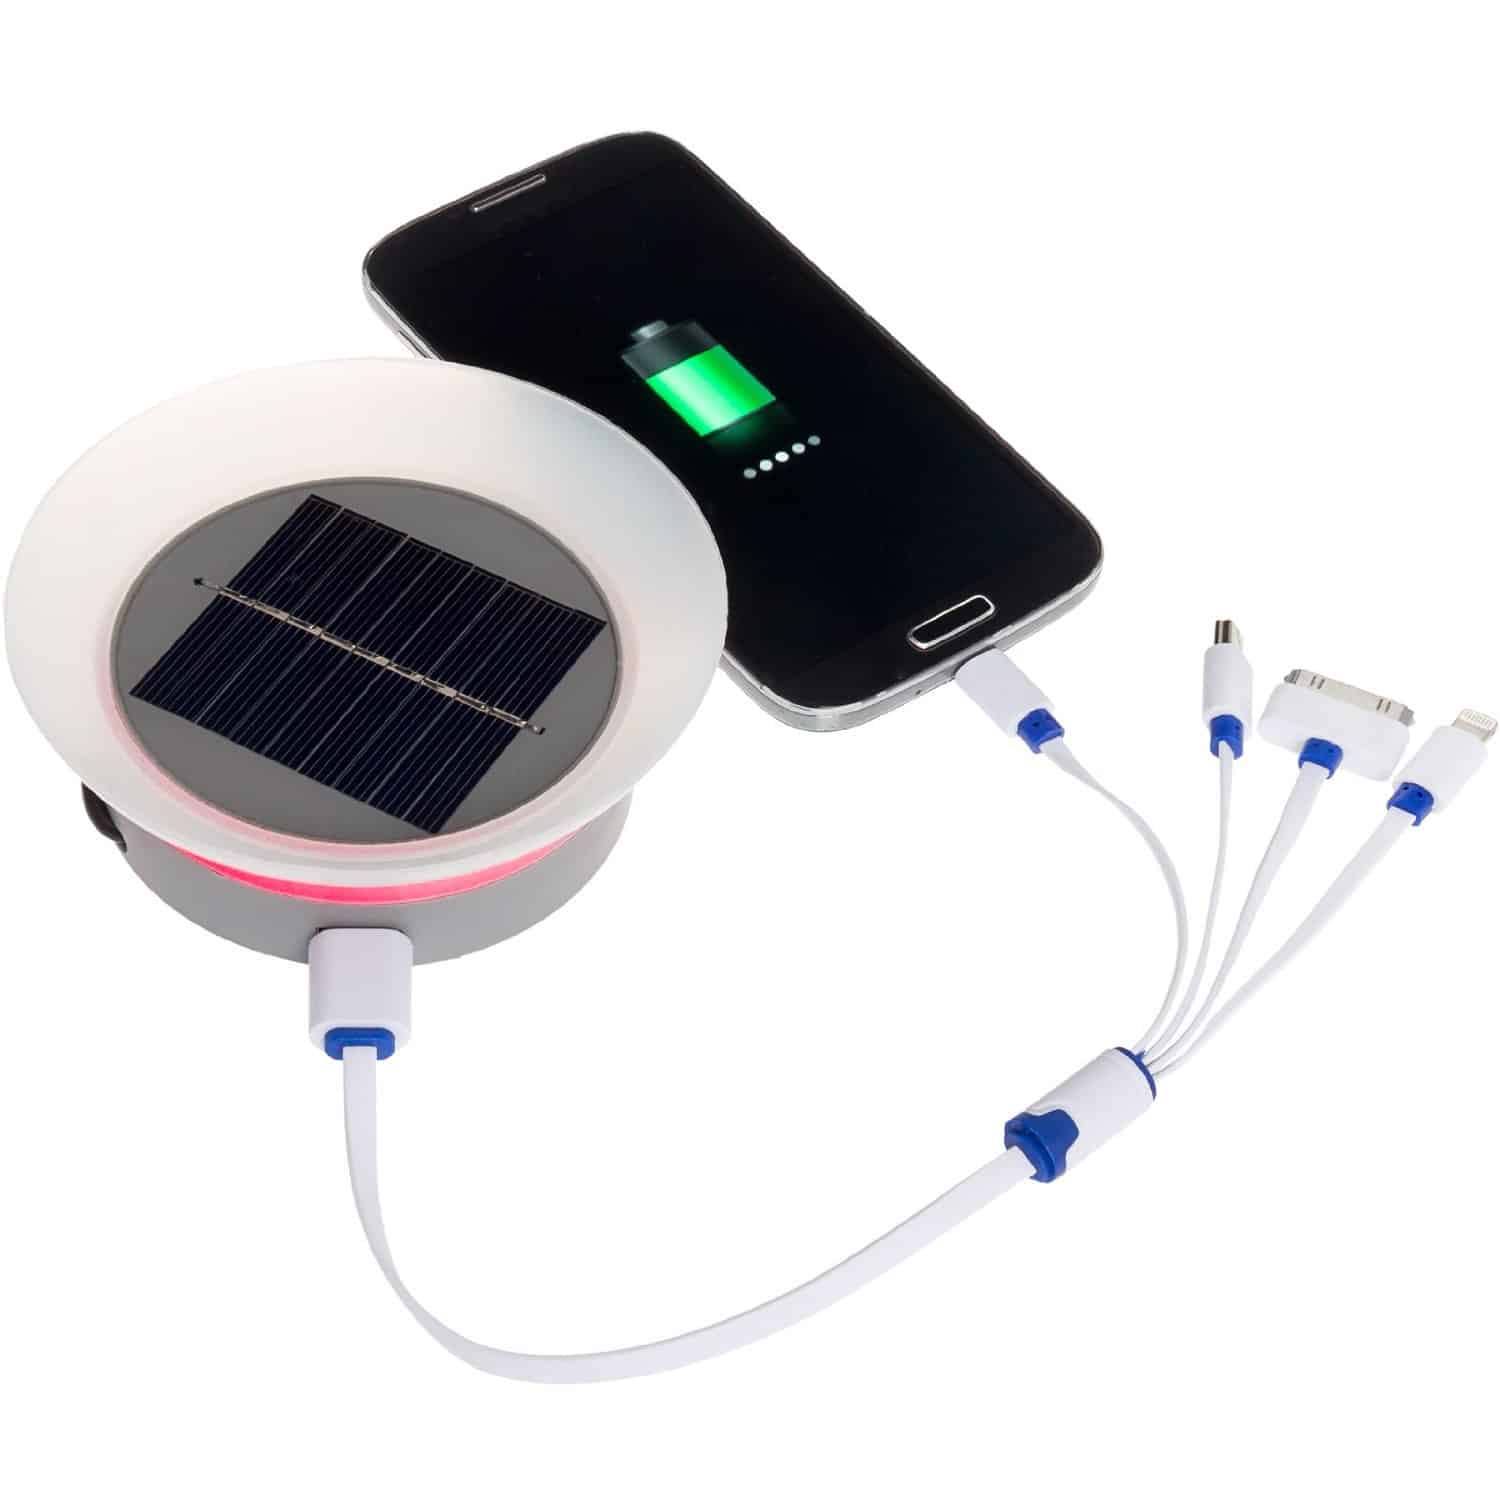 Charge device. Зарядка от солнечной батареи. Зарядка от солнечной батареи с набором переходников (zo-717). Зарядка для телефона на батарейках. Зарядное для телефонов на солнечных батарейках.